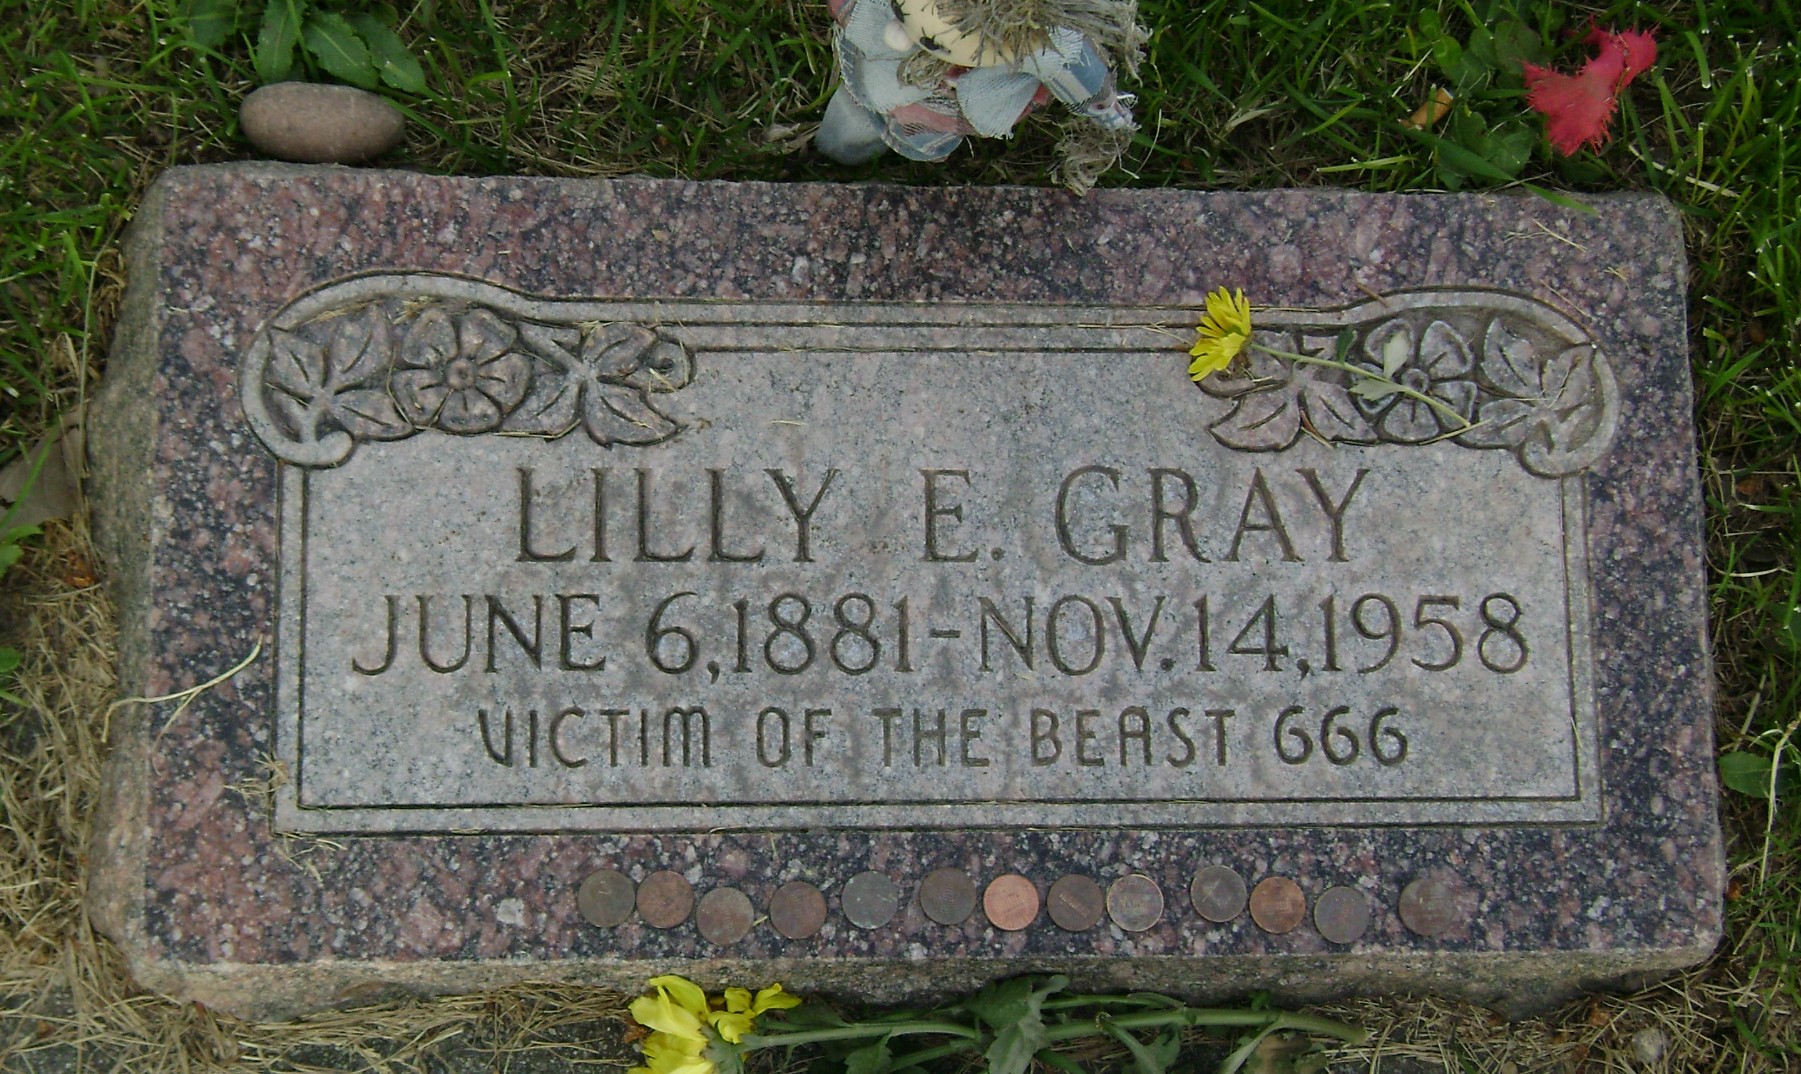 La inquietante tumba de Lilly E. Gray, víctima de la bestia